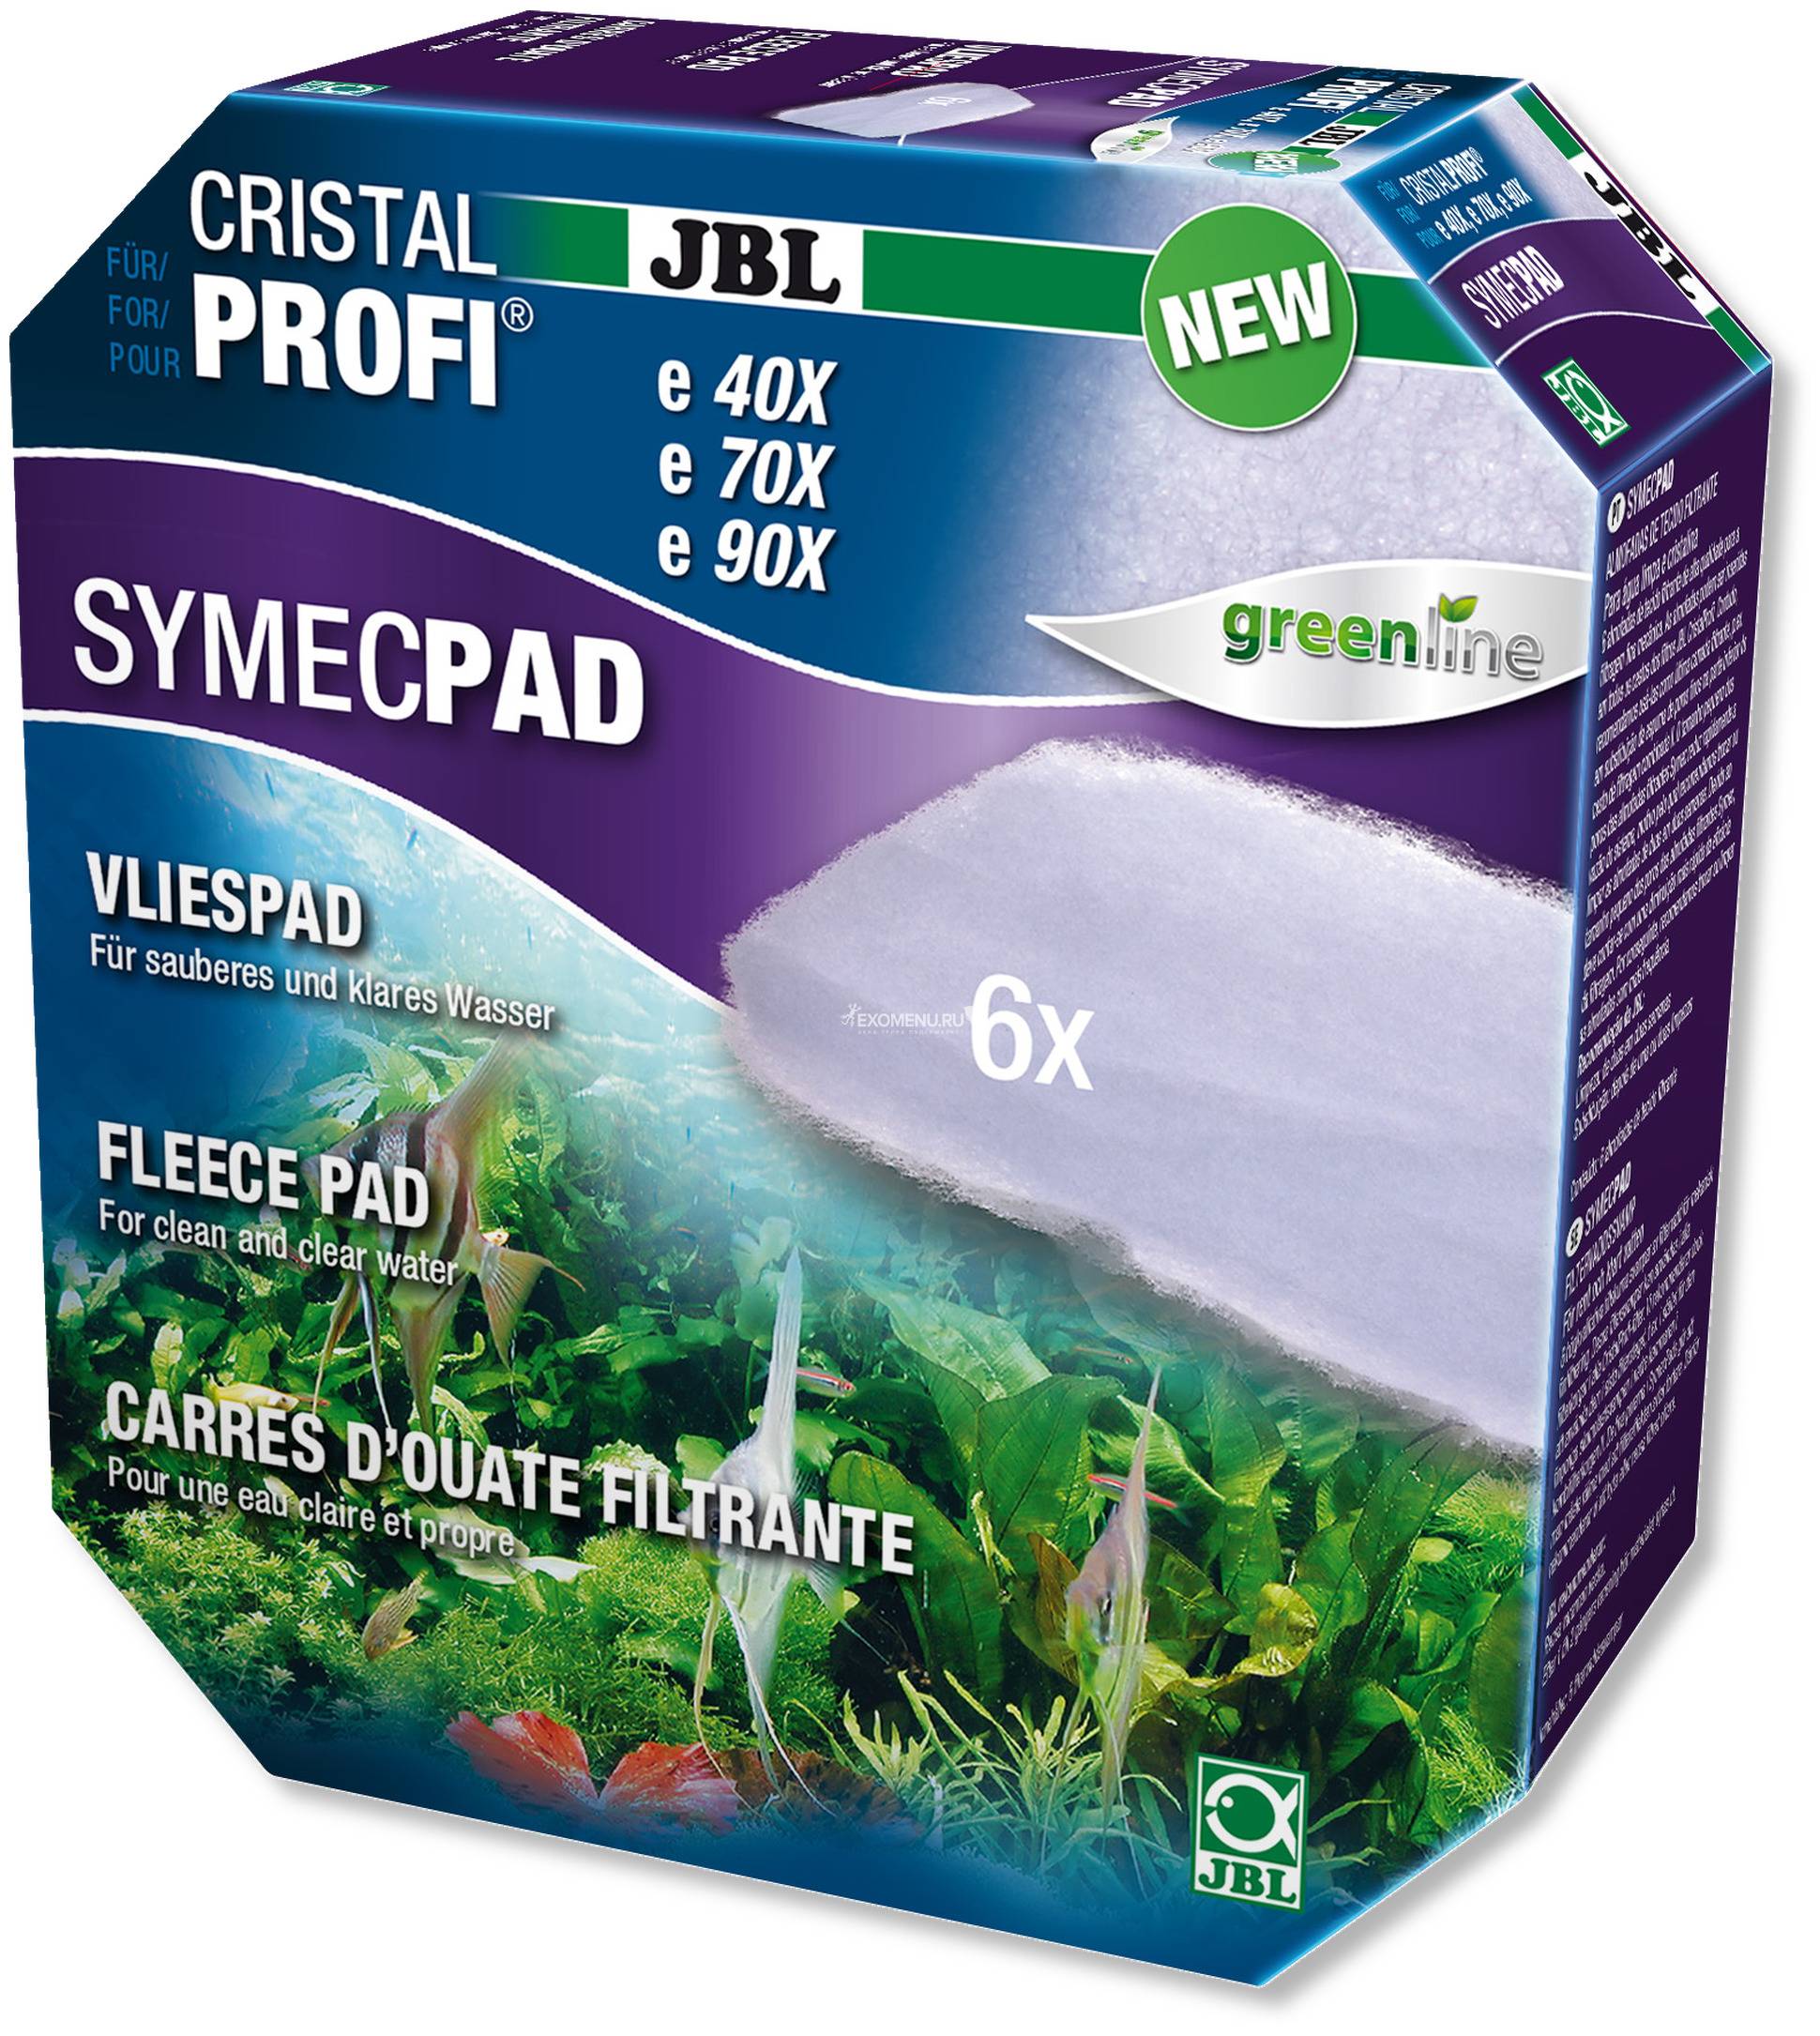 JBL SymecPad II CPe - Синтепоновая прокладка тонкой фильтрации для внешних фильтров JBL CristalProfi e4/7/901-2, 6 шт.